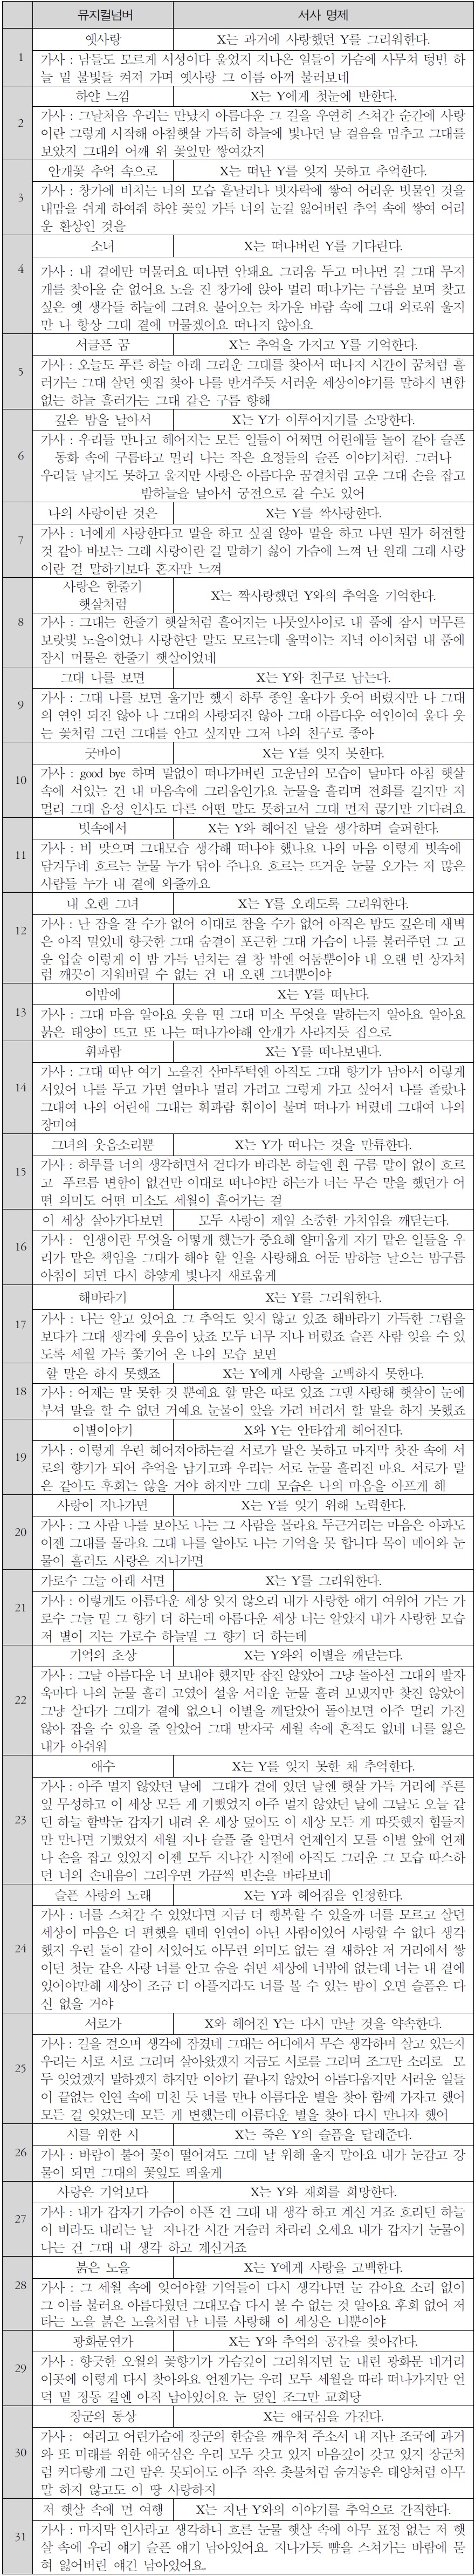 <광화문연가> 뮤지컬넘버 원곡의 서사 명제 분석